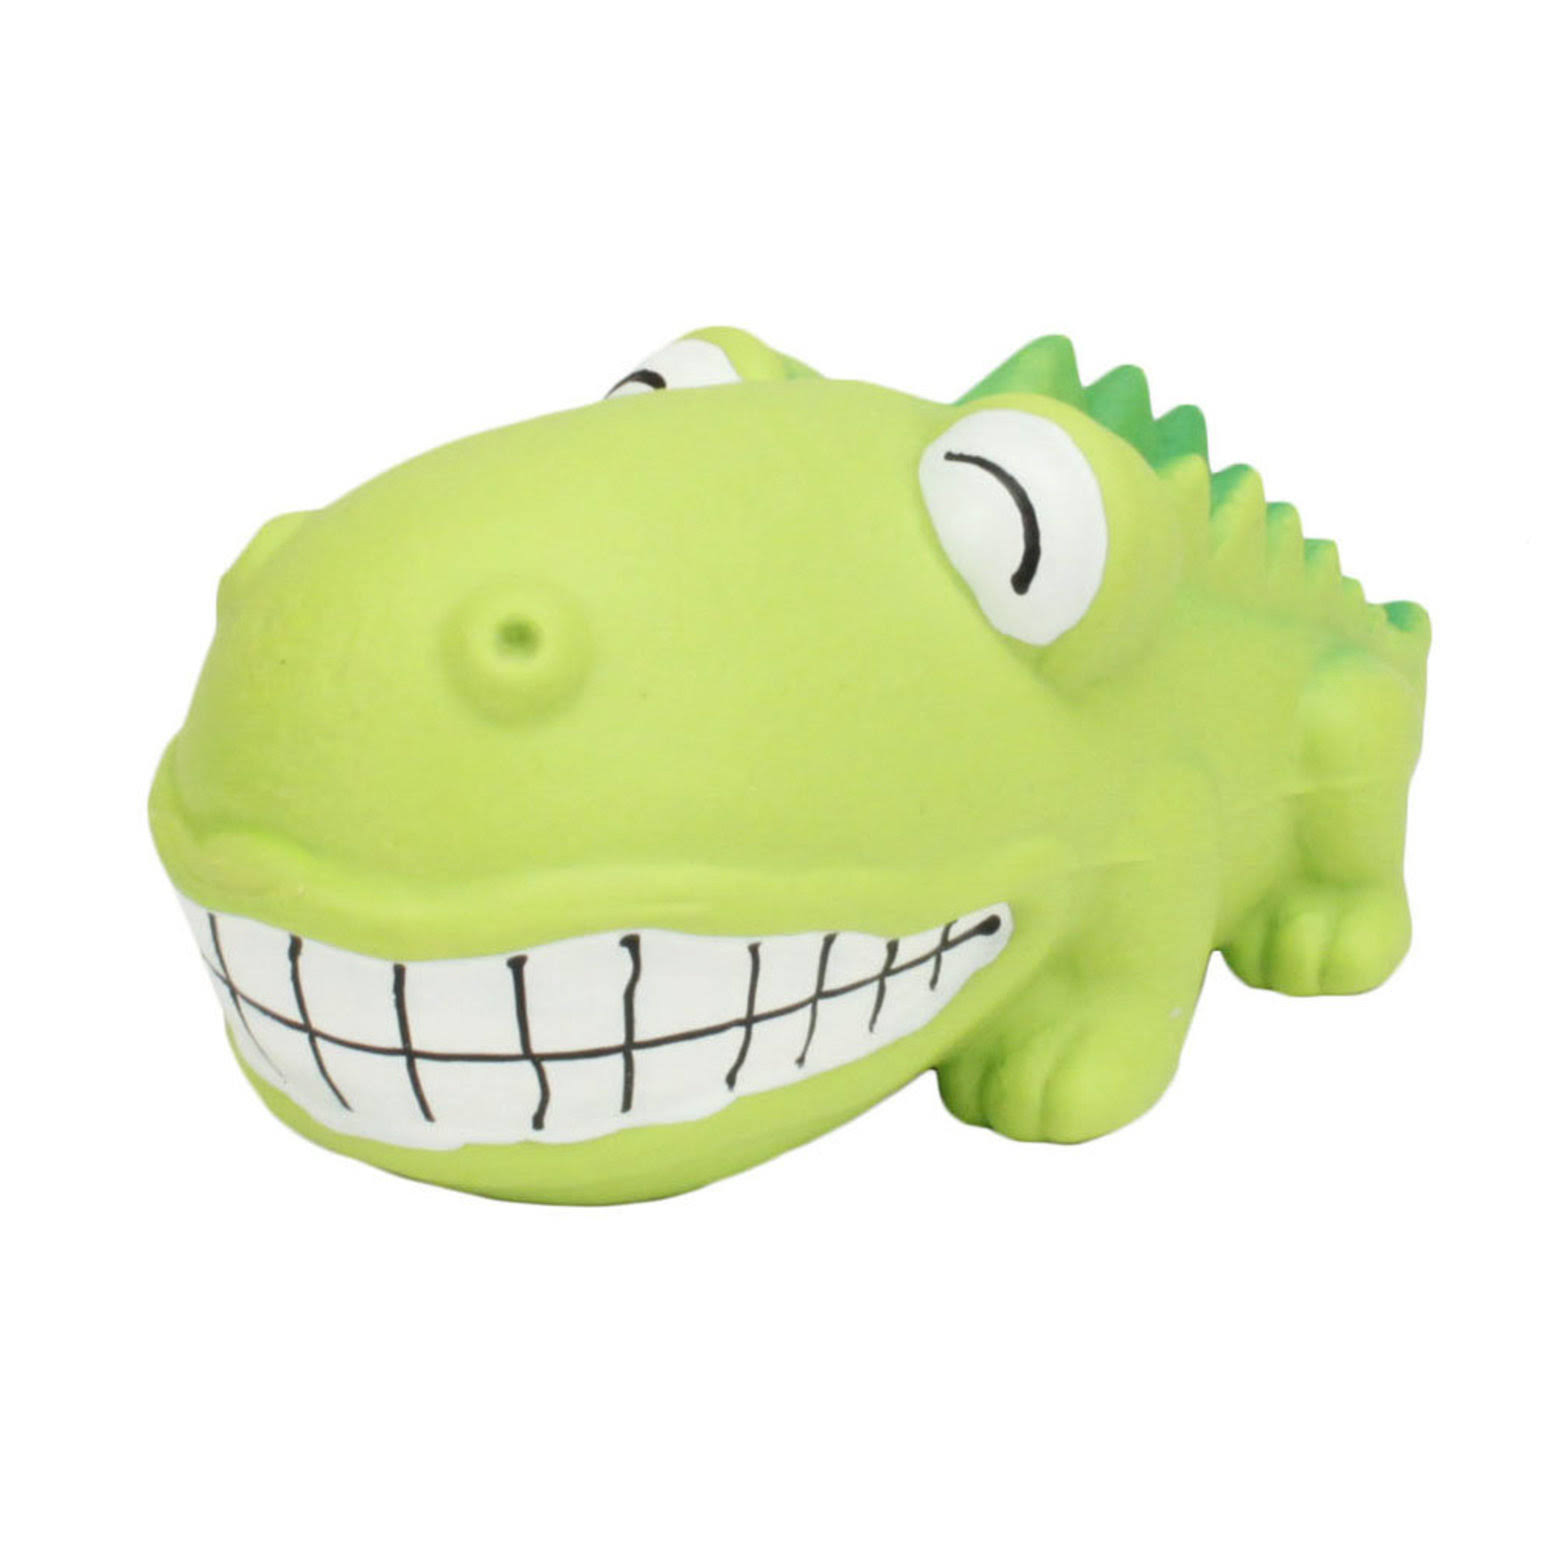 Rascals Dog Toy - Big Head Alligator | Size: 7"